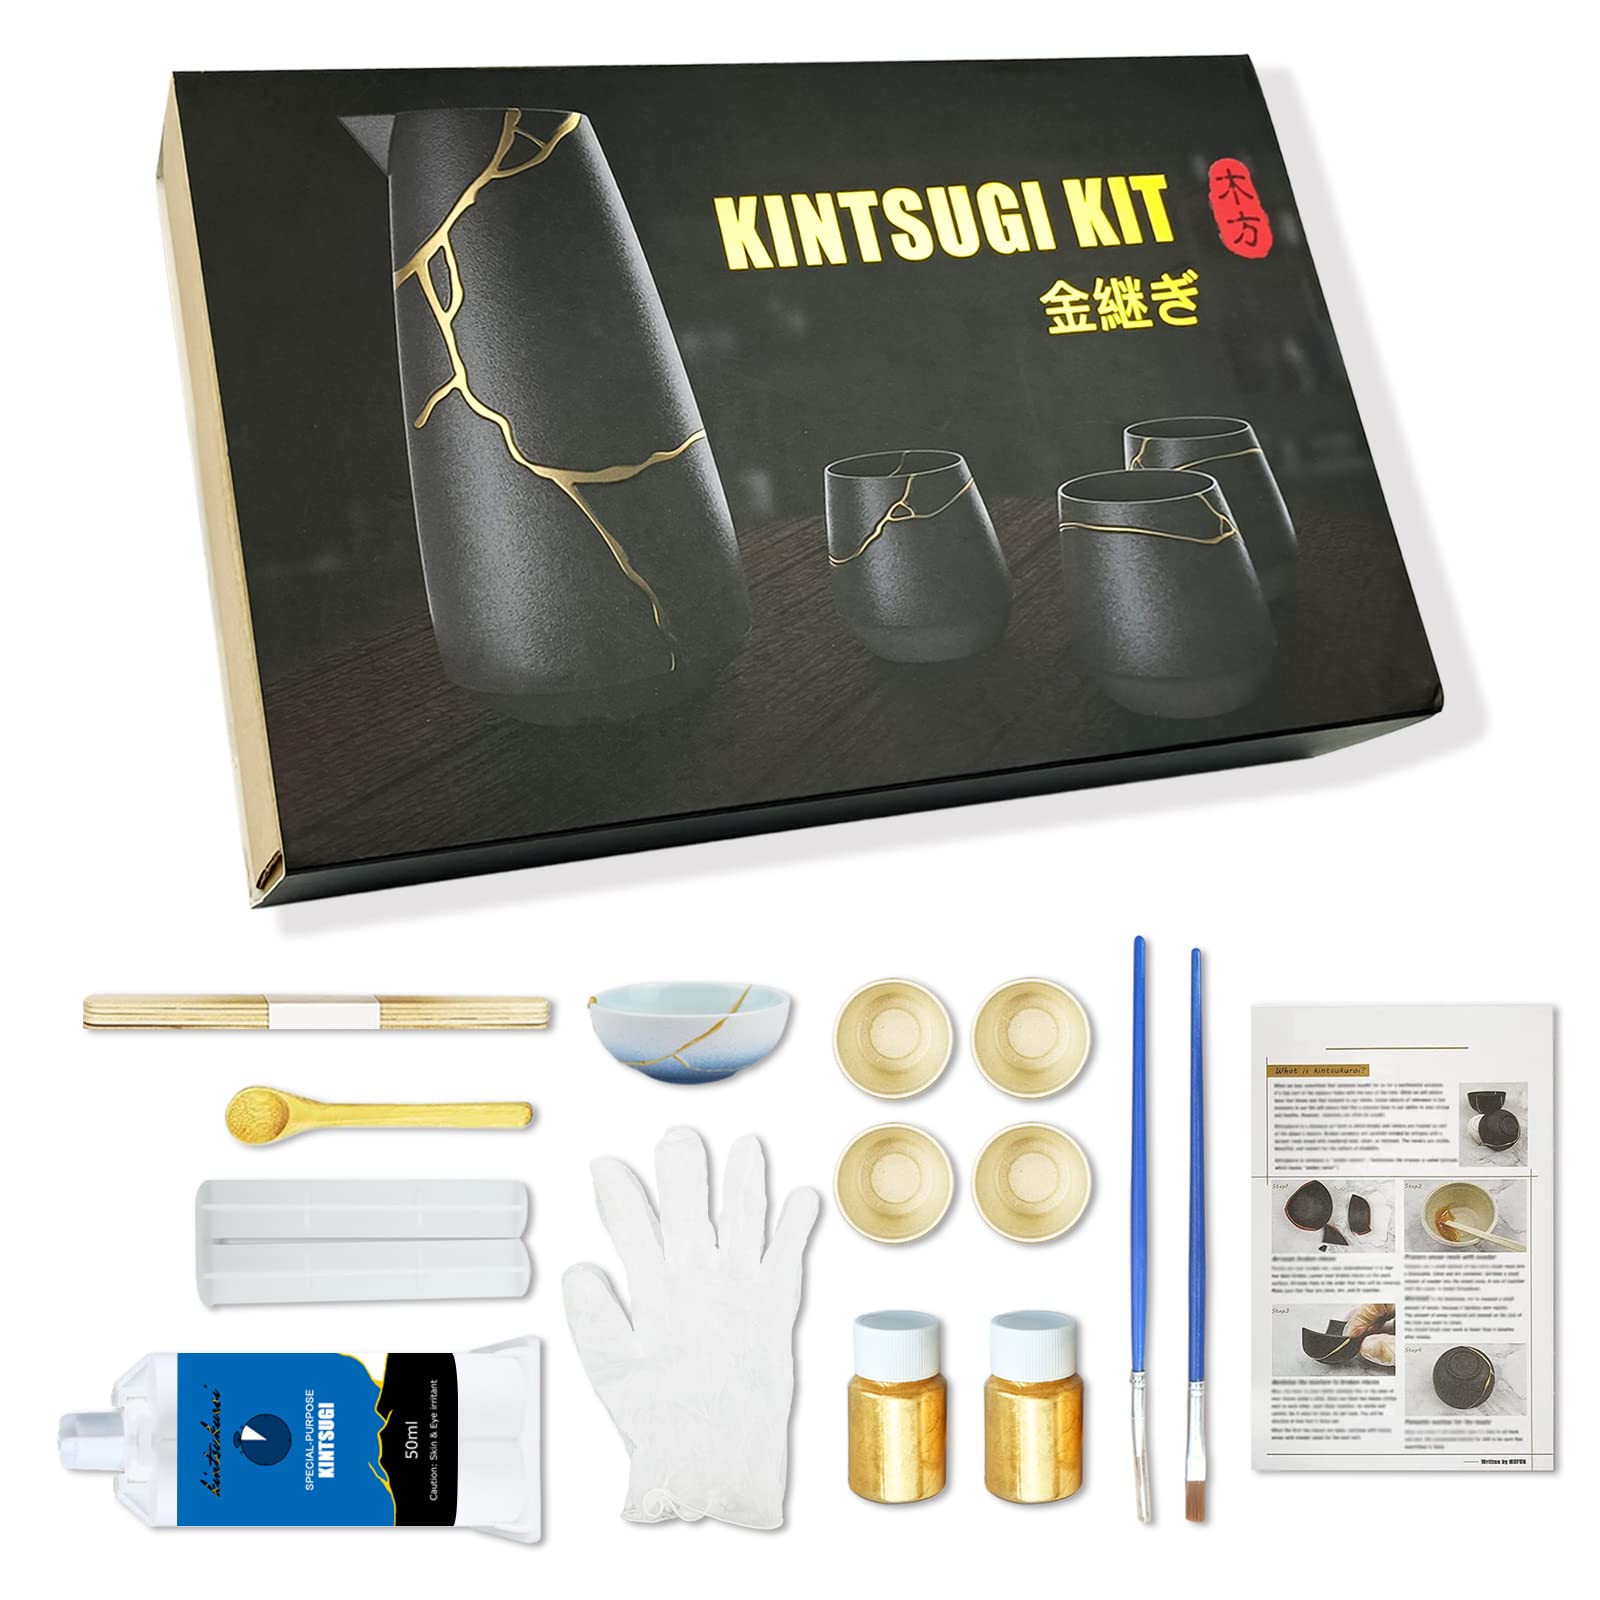 Kintsugi Repair Kit Gold, Kintsugi Kit Repairs Broken Ceramics, Glass,  Jade, Sculptures, Gold Glue Repairs Meaningful Pottery, Perfect Kintsugi  Repair